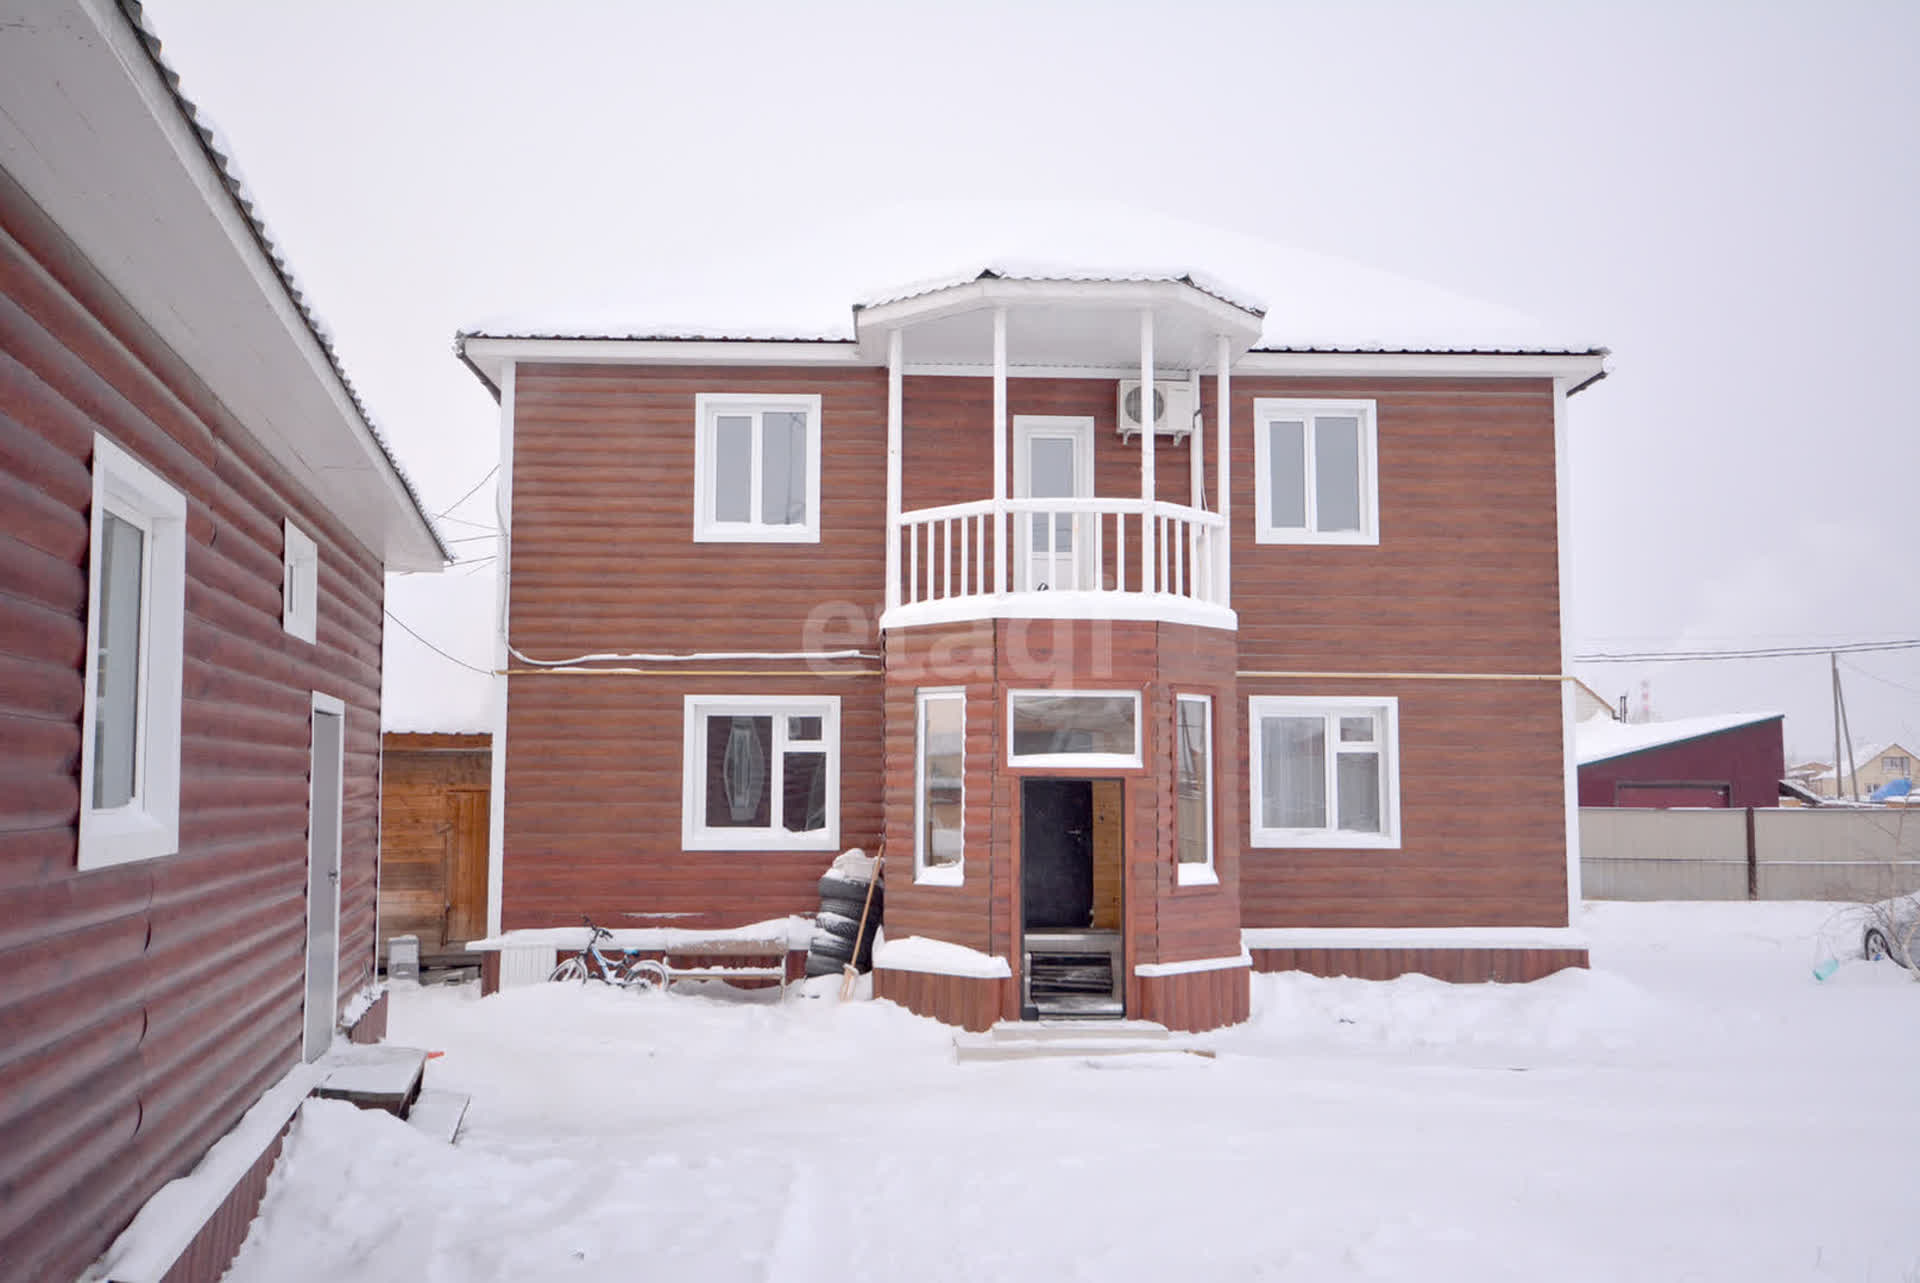 Купить частный дом в Якутске у собственника, объявлений без посредников